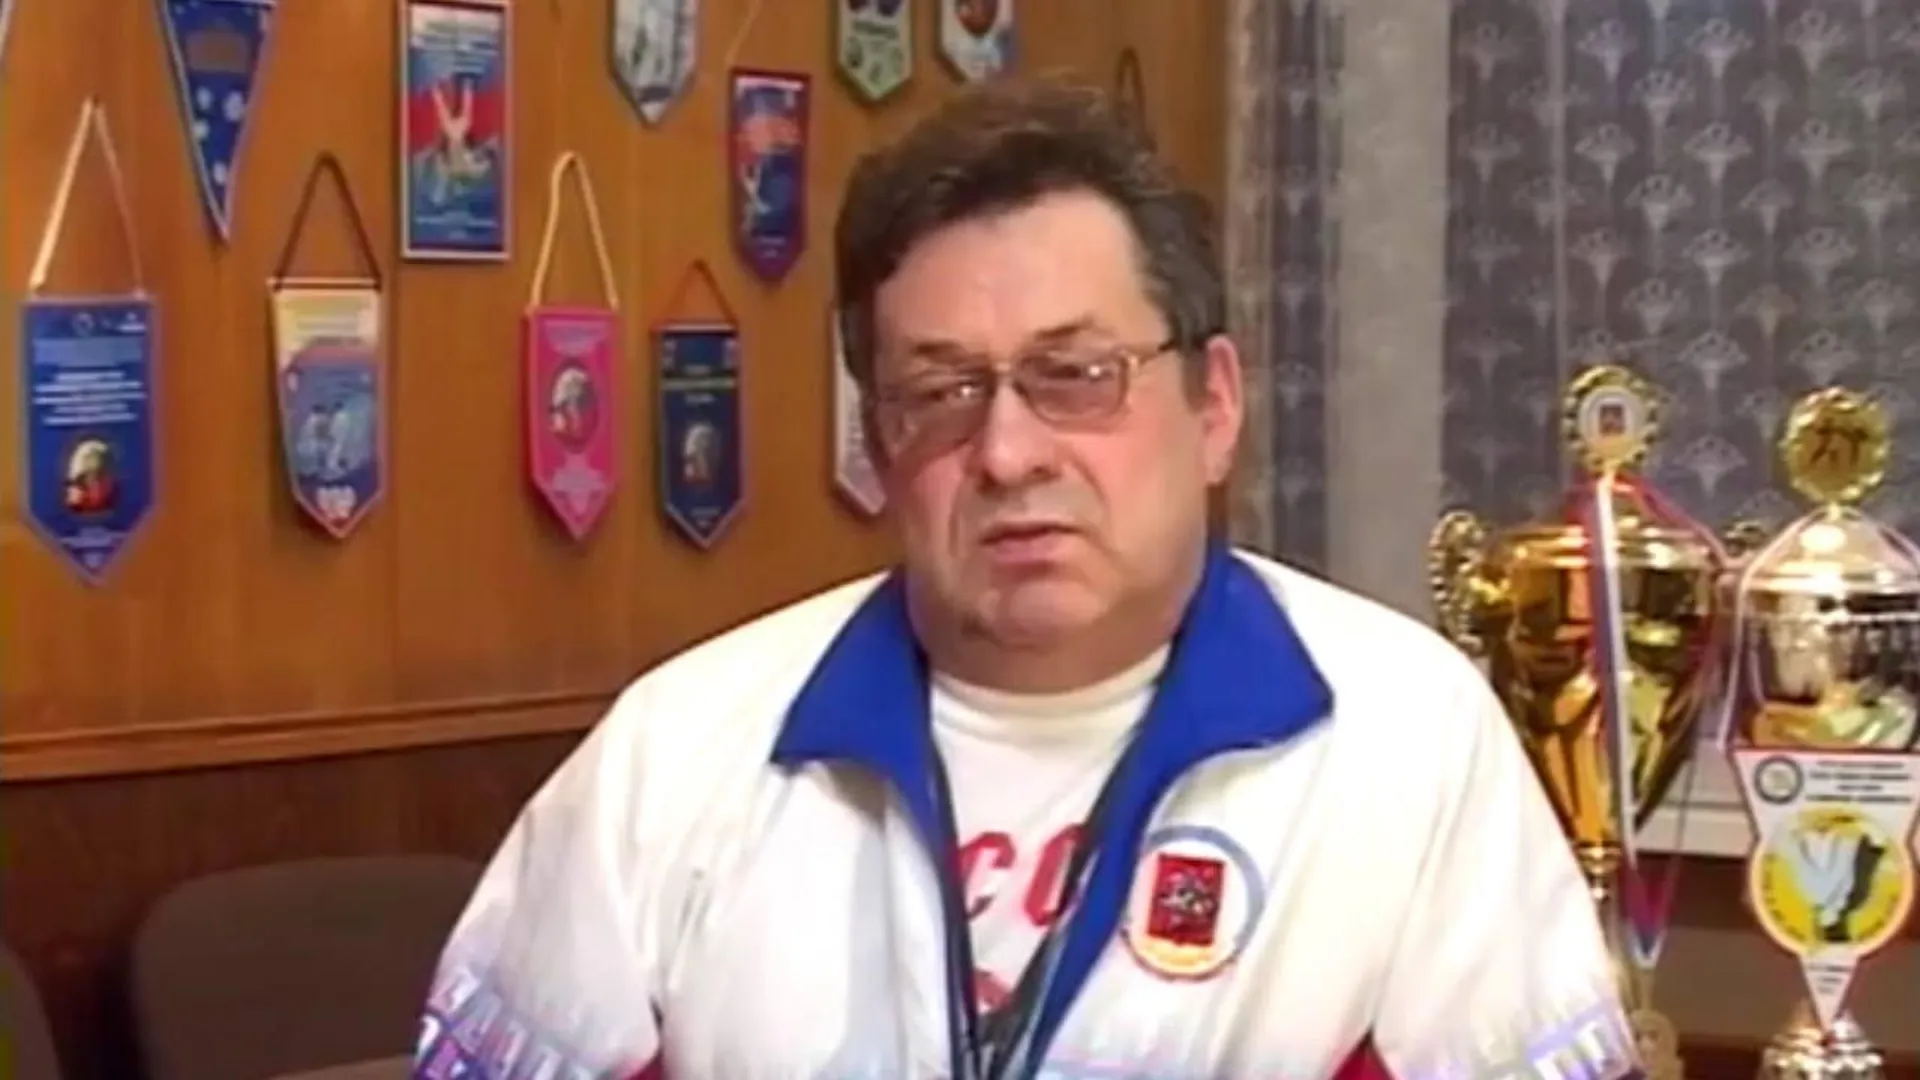 Подмосковный тренер по самбо Владимир Кочетков празднует юбилей